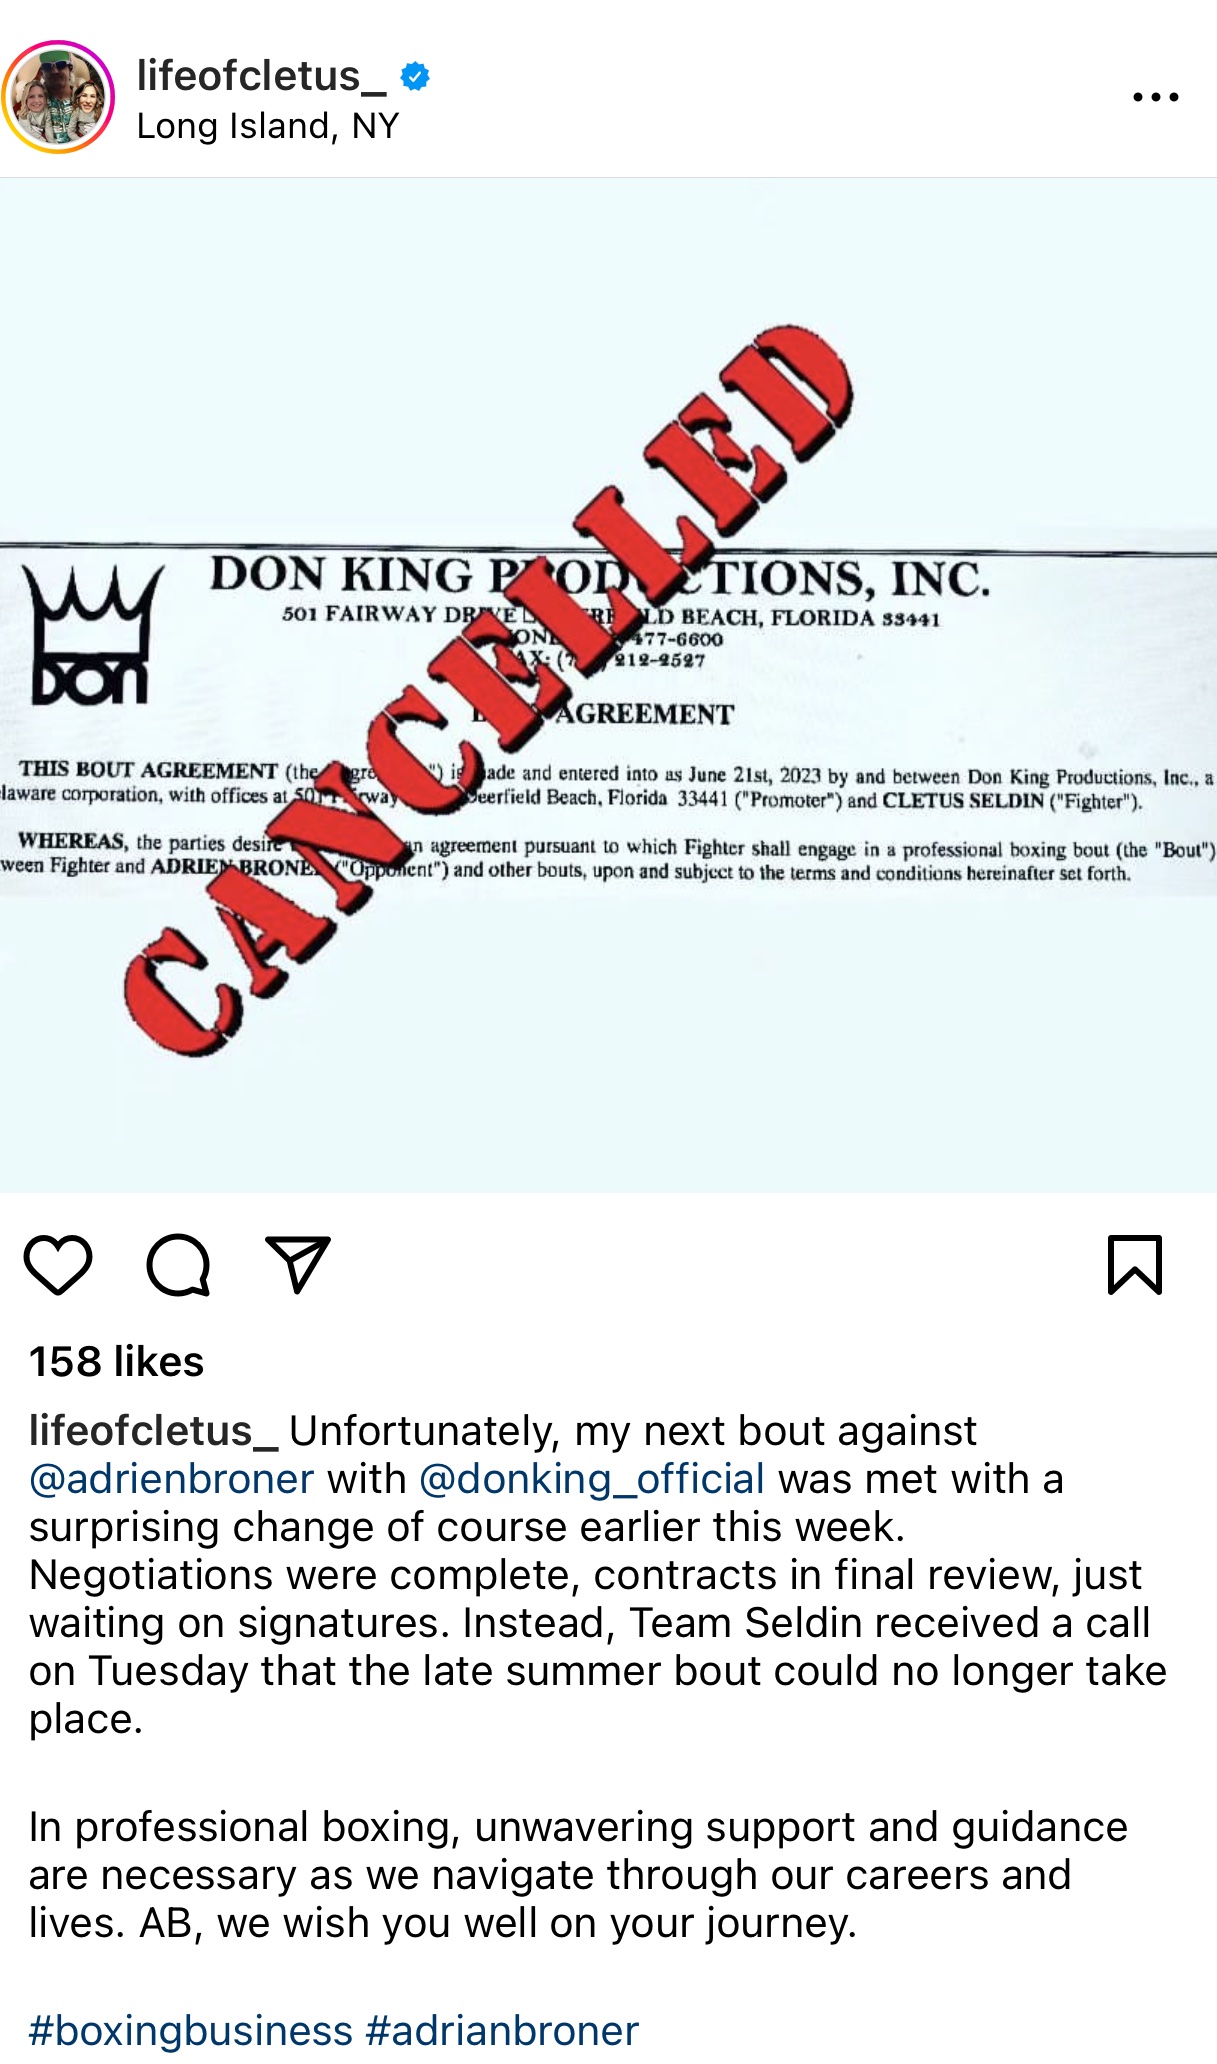 Seldin dice que una pelea contra Adrien Broner está cancelada en una publicación de Instagram